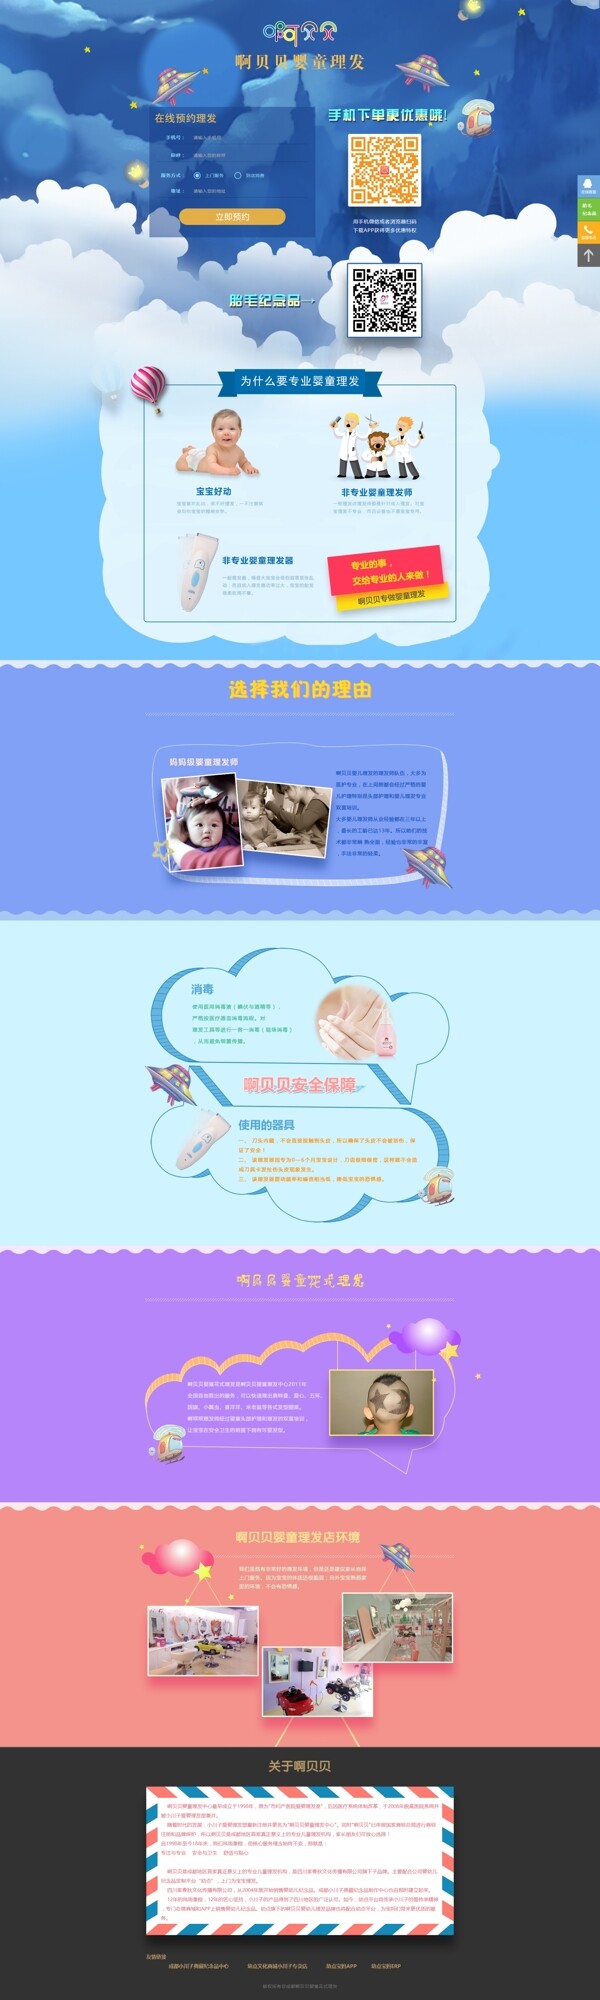 婴儿理发活动专题页手机版和电脑版设计图